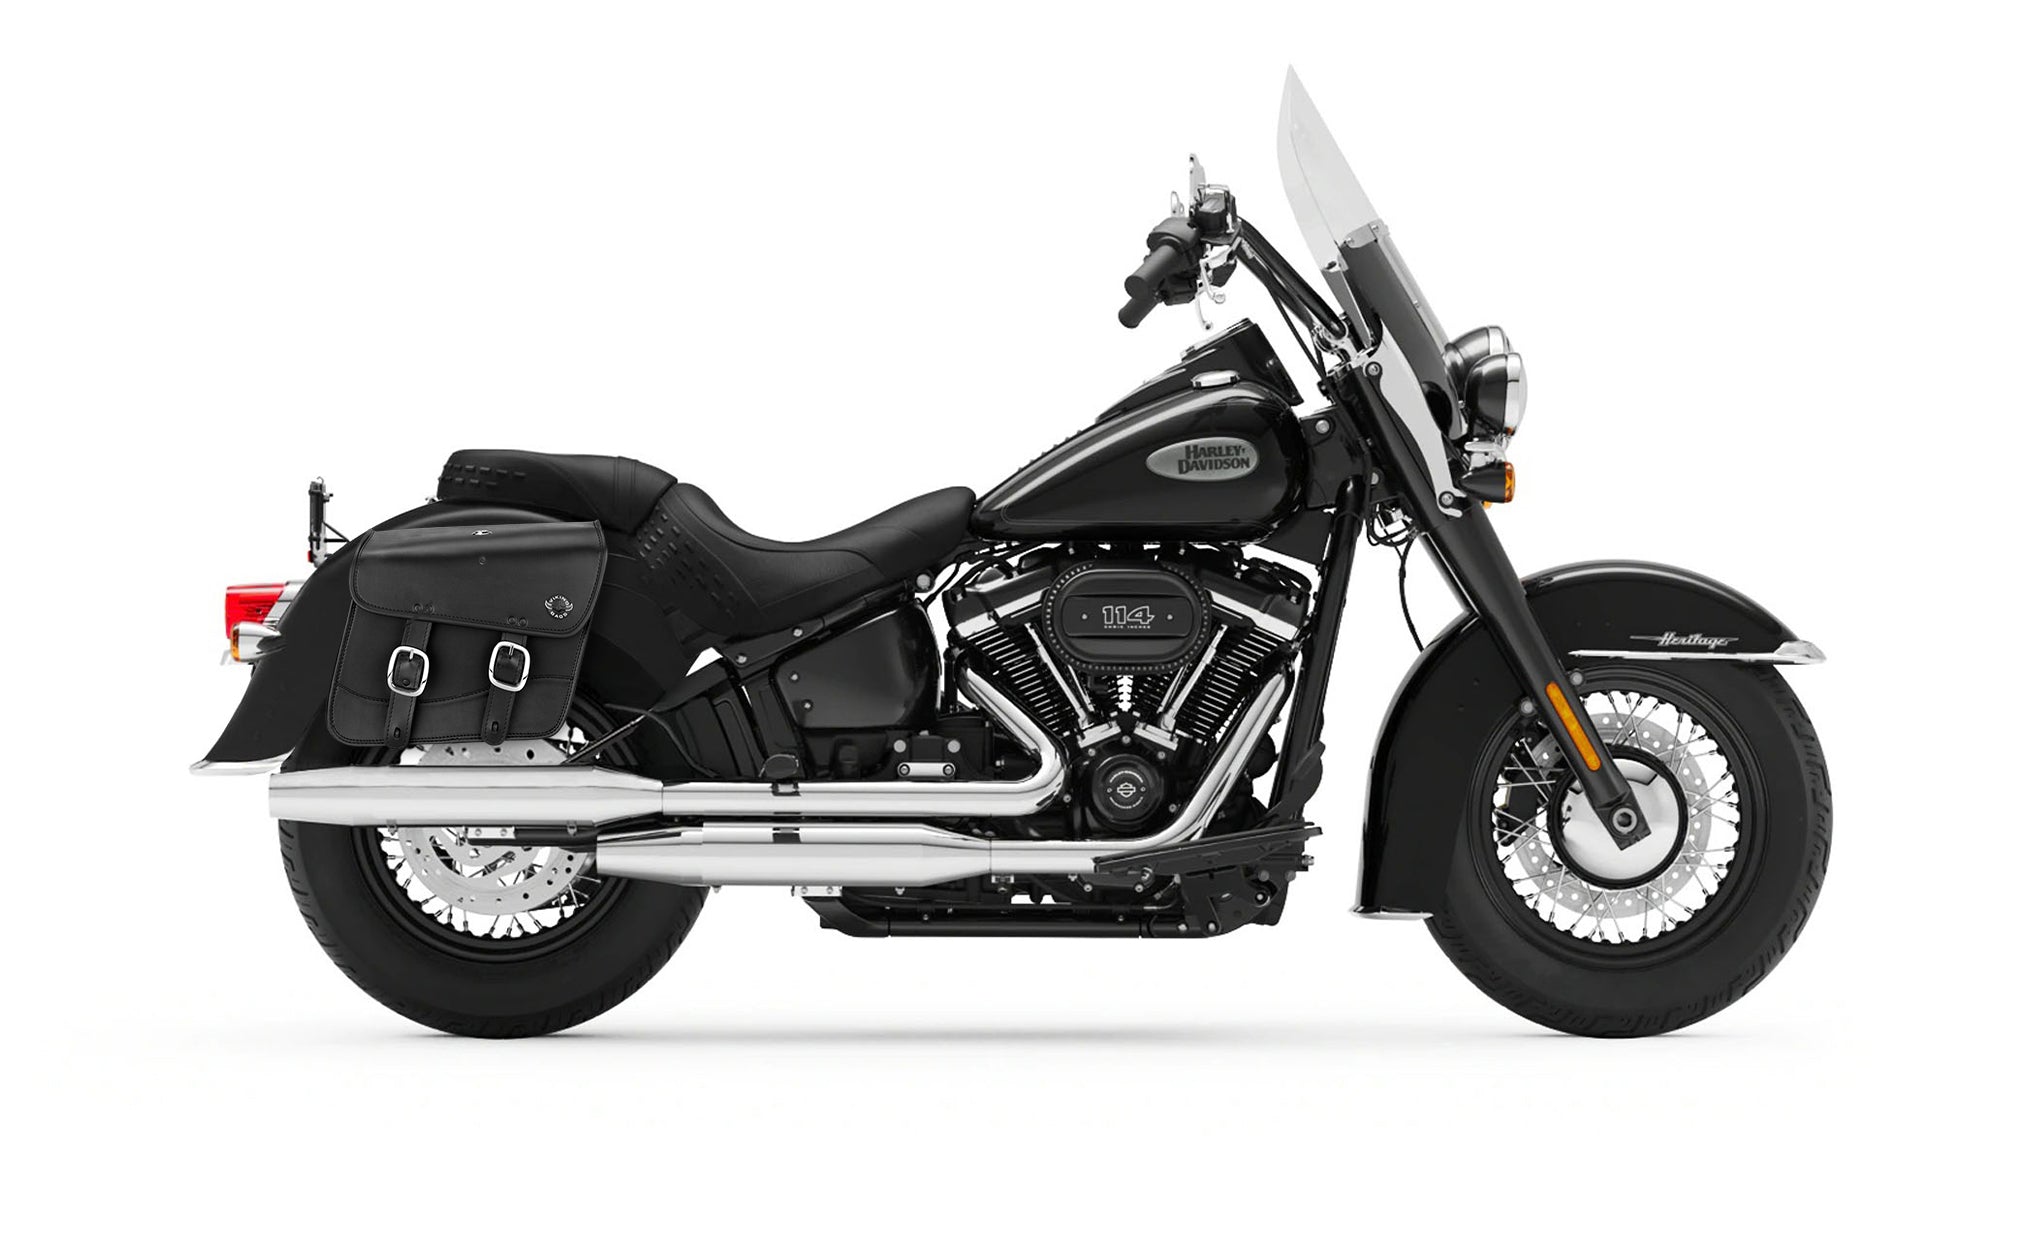 Viking Thor Medium Leather Motorcycle Saddlebags For Harley Davidson Softail Heritage Flst I C Ci on Bike Photo @expand